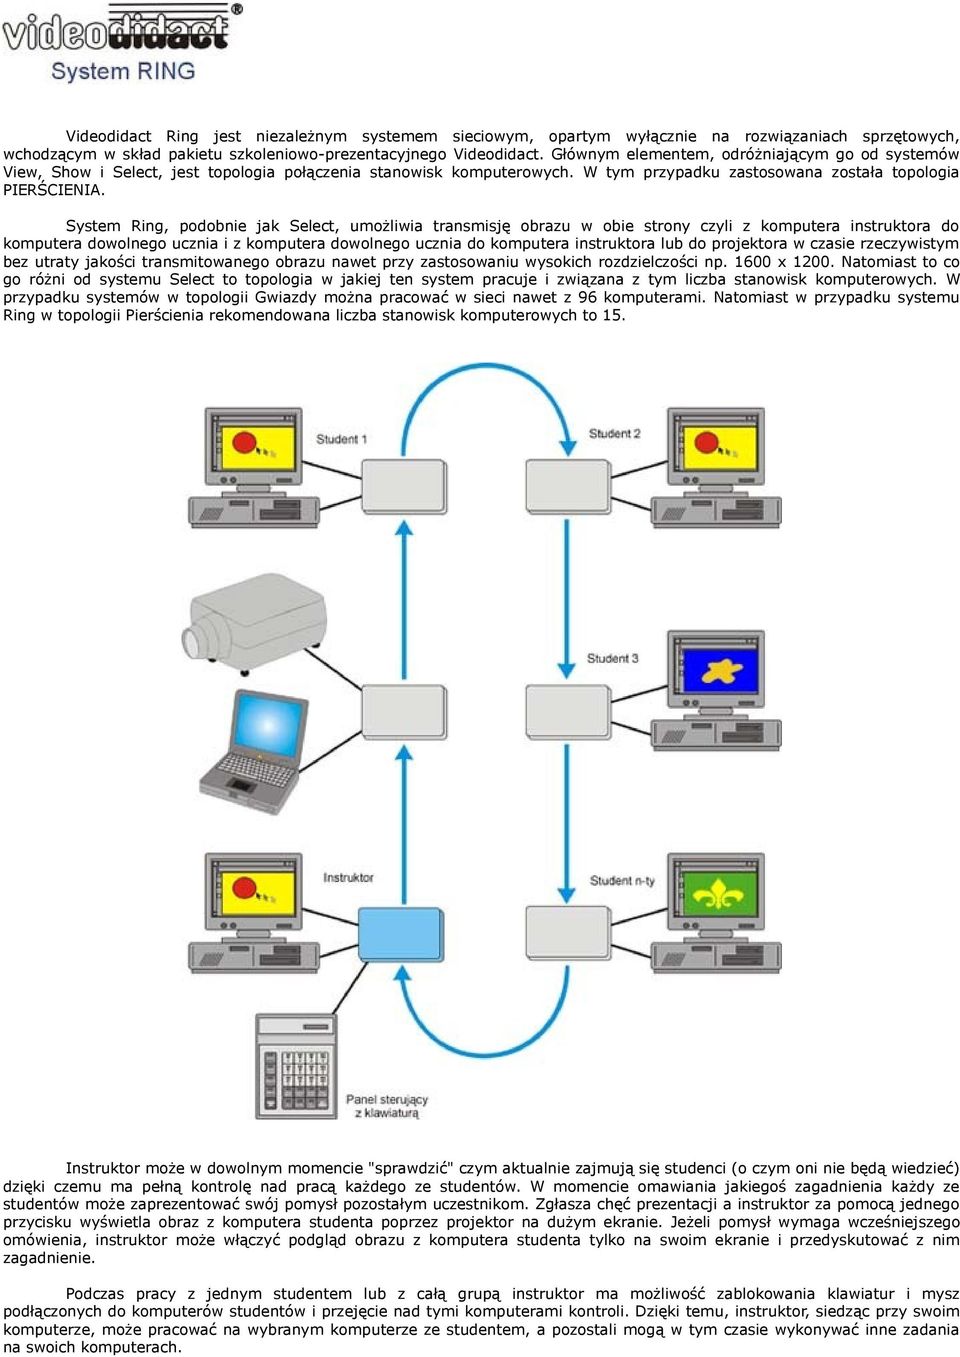 System Ring, podobnie jak Select, umożliwia transmisję obrazu w obie strony czyli z komputera instruktora do komputera dowolnego ucznia i z komputera dowolnego ucznia do komputera instruktora lub do